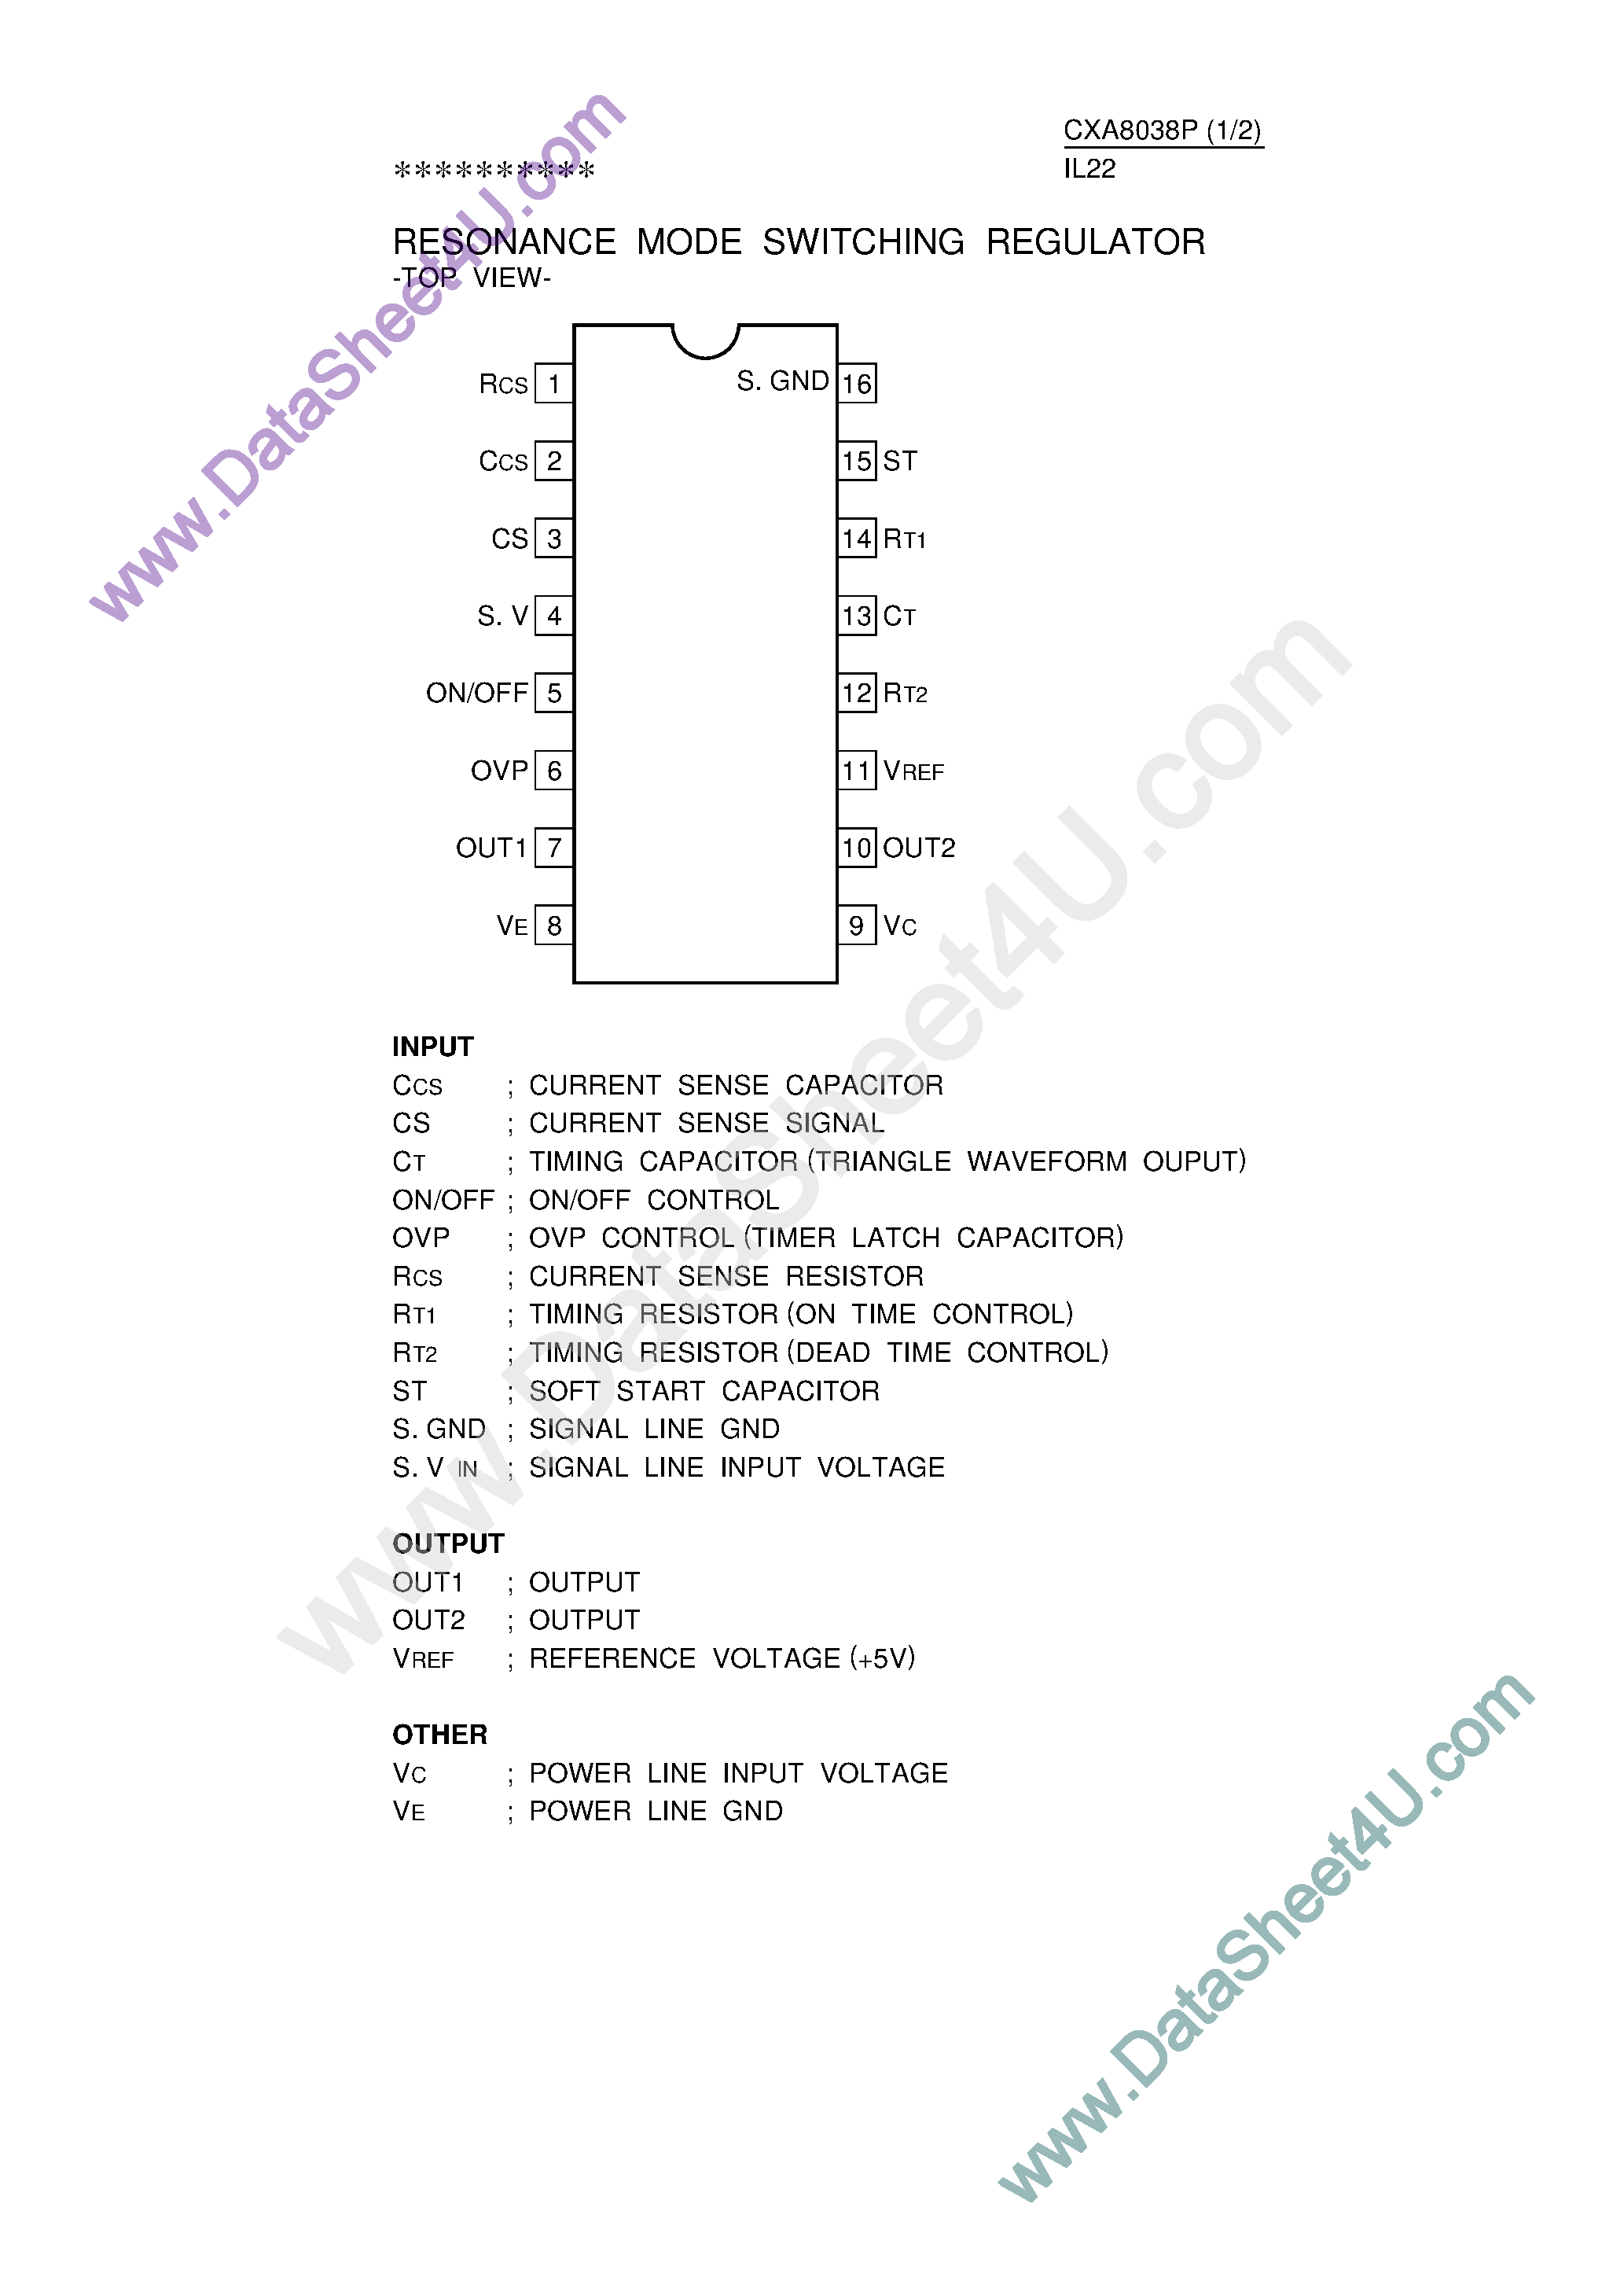 Datasheet CXA8038P - Resonance Mode Switching Regulator page 1